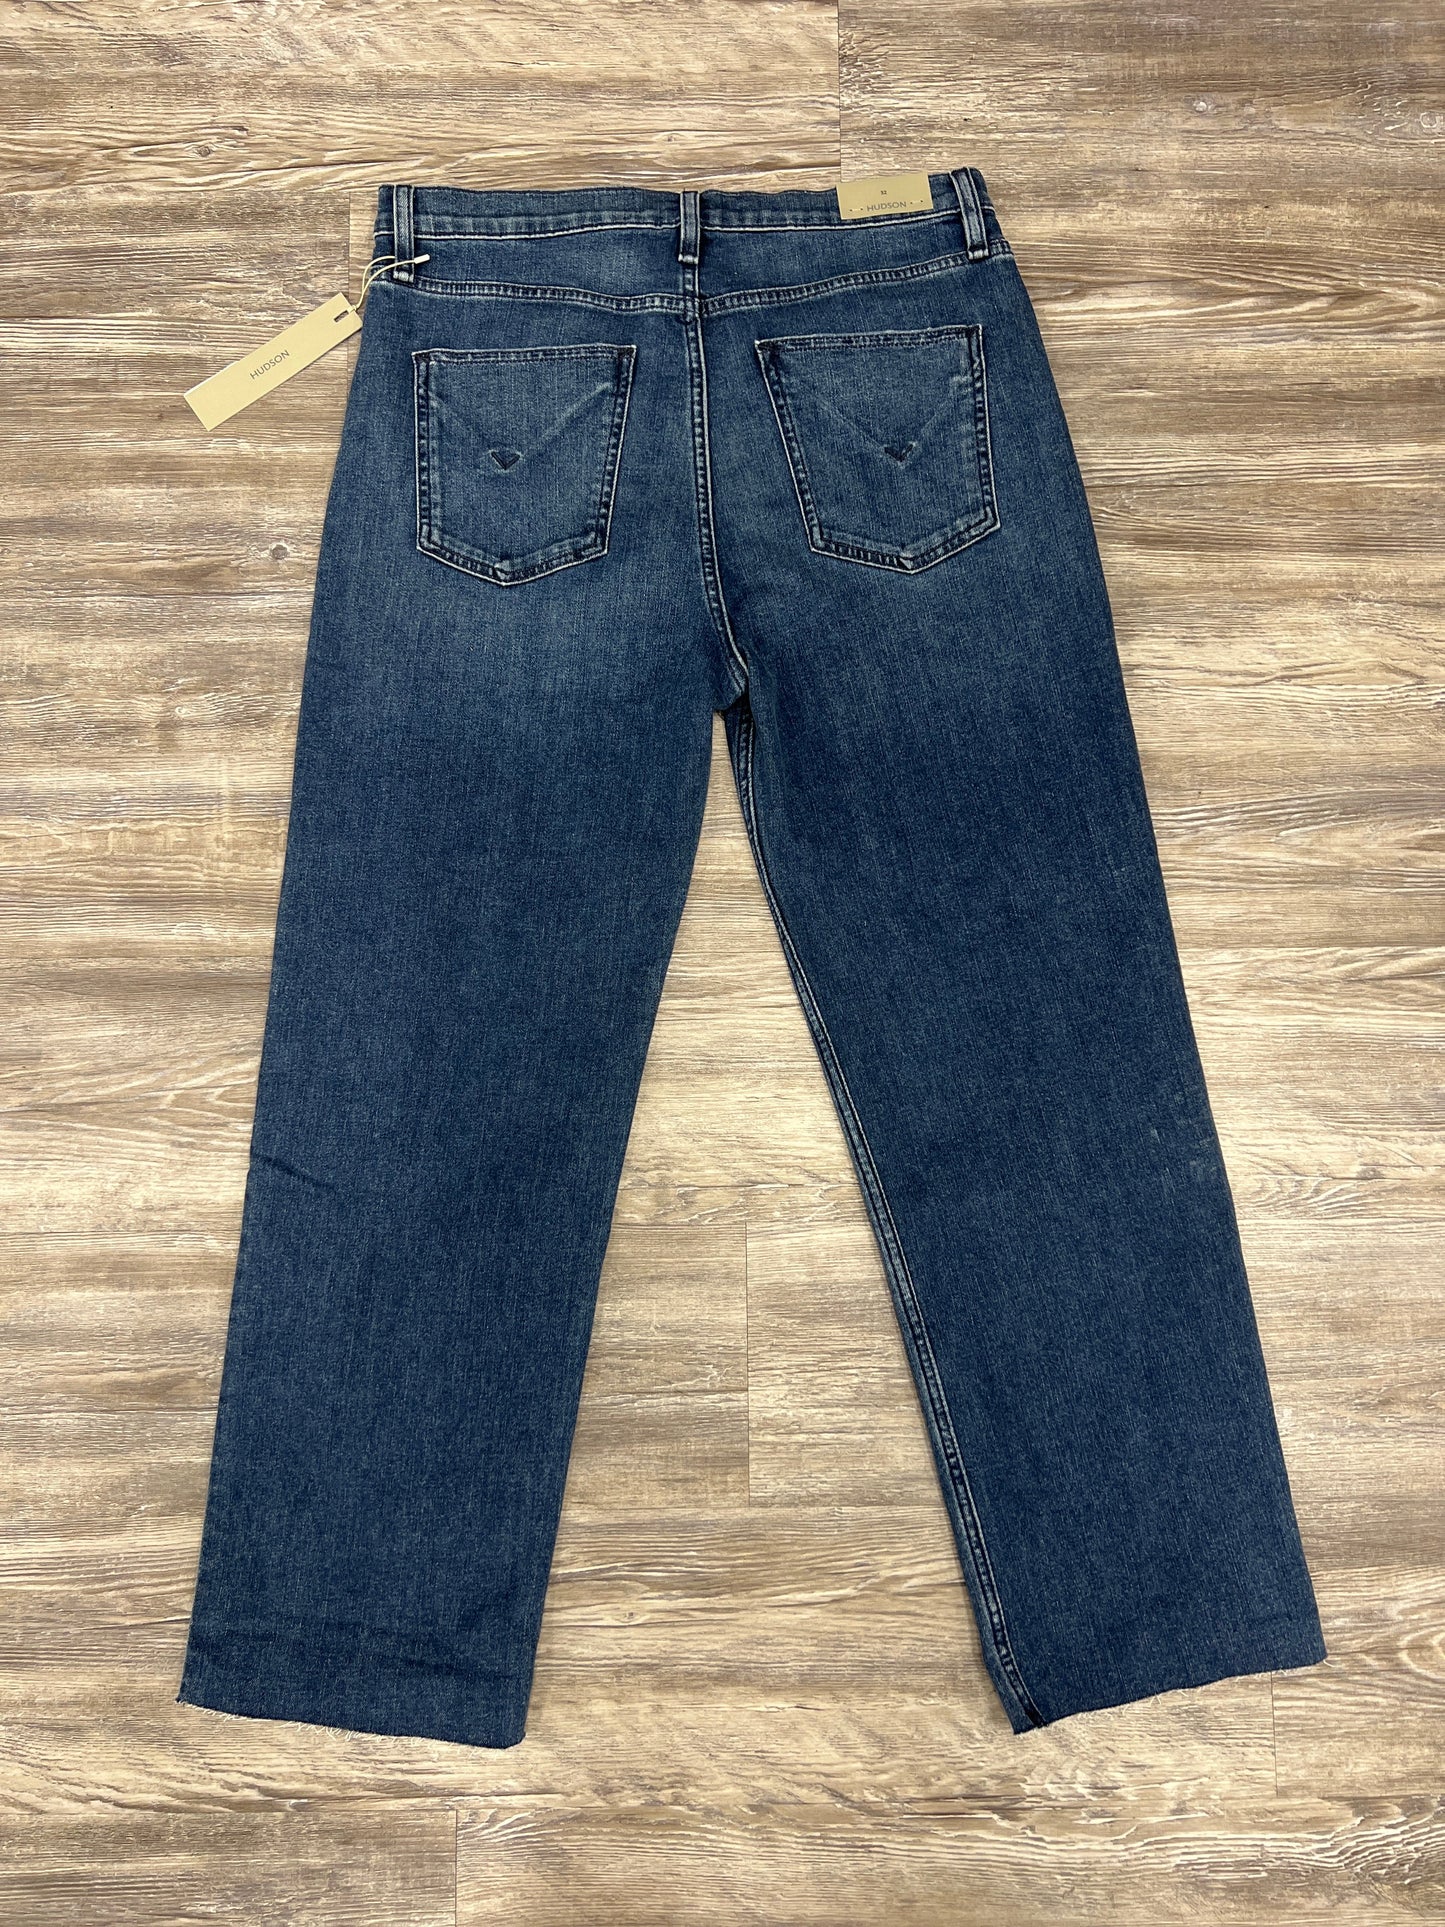 Jeans Designer By Hudson Size: 14